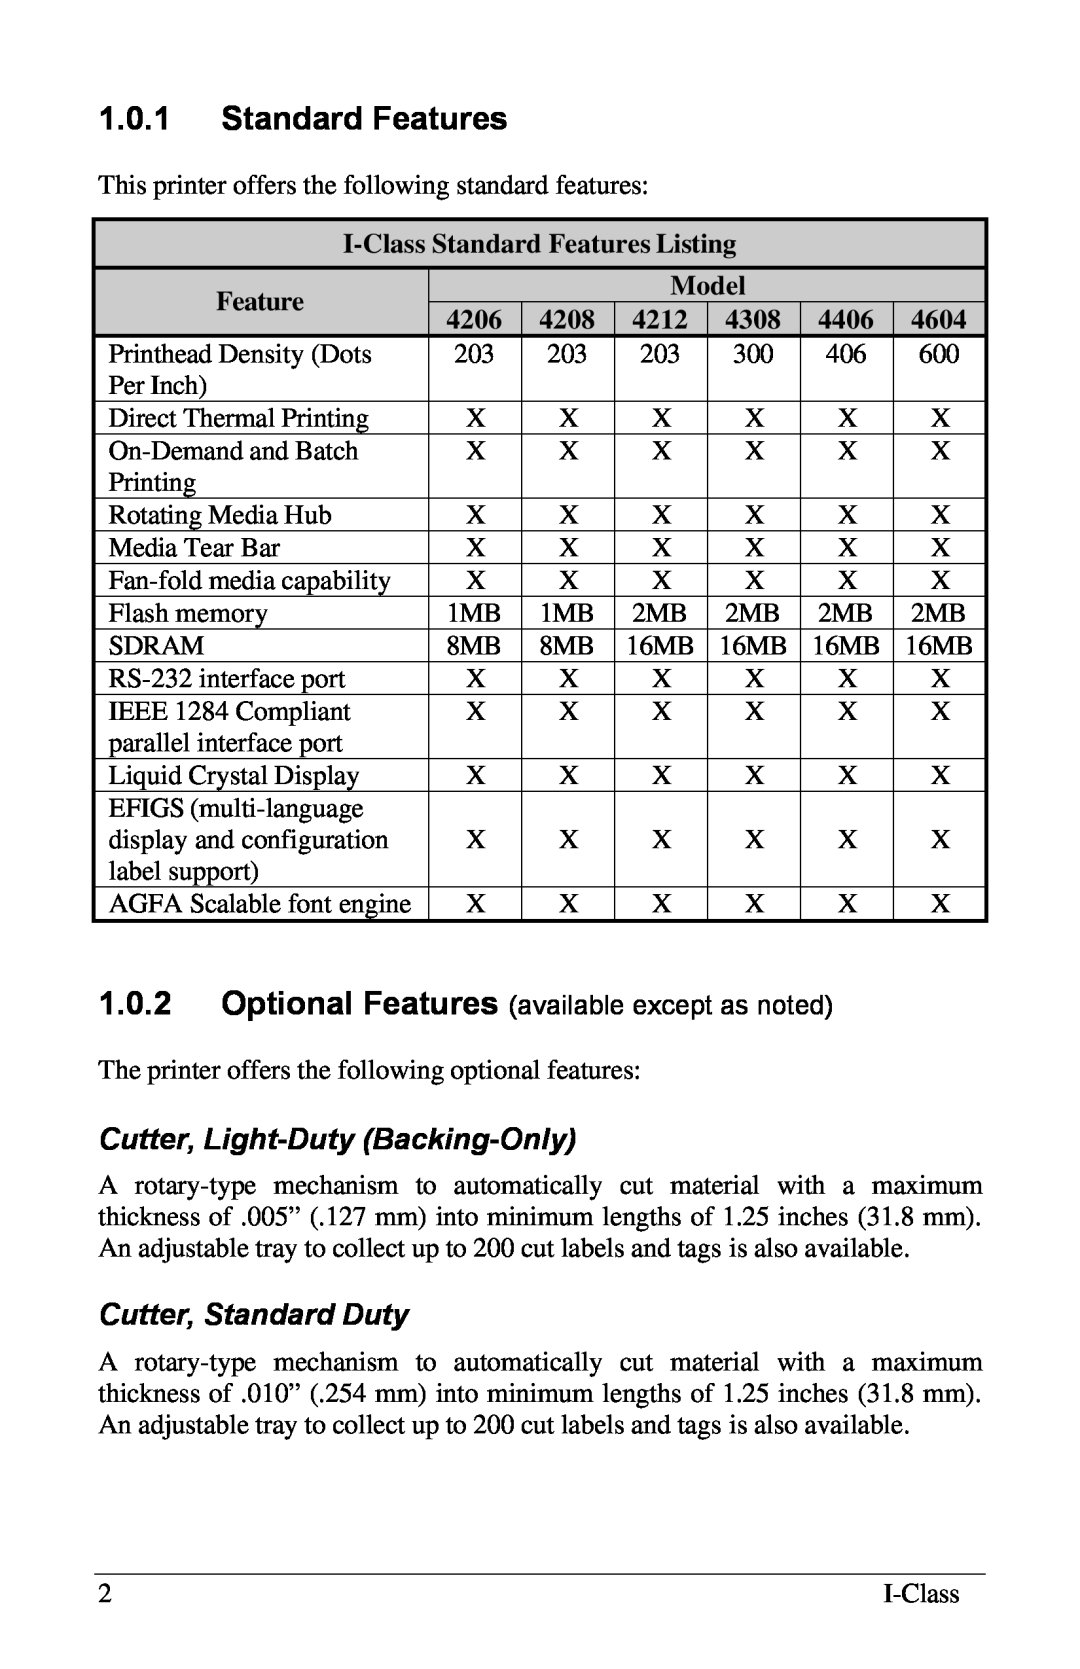 Xerox I Class manual 1.0.1Standard Features, Cutter, Light-Duty Backing-Only, Cutter, Standard Duty, Model, 4206, 4604 